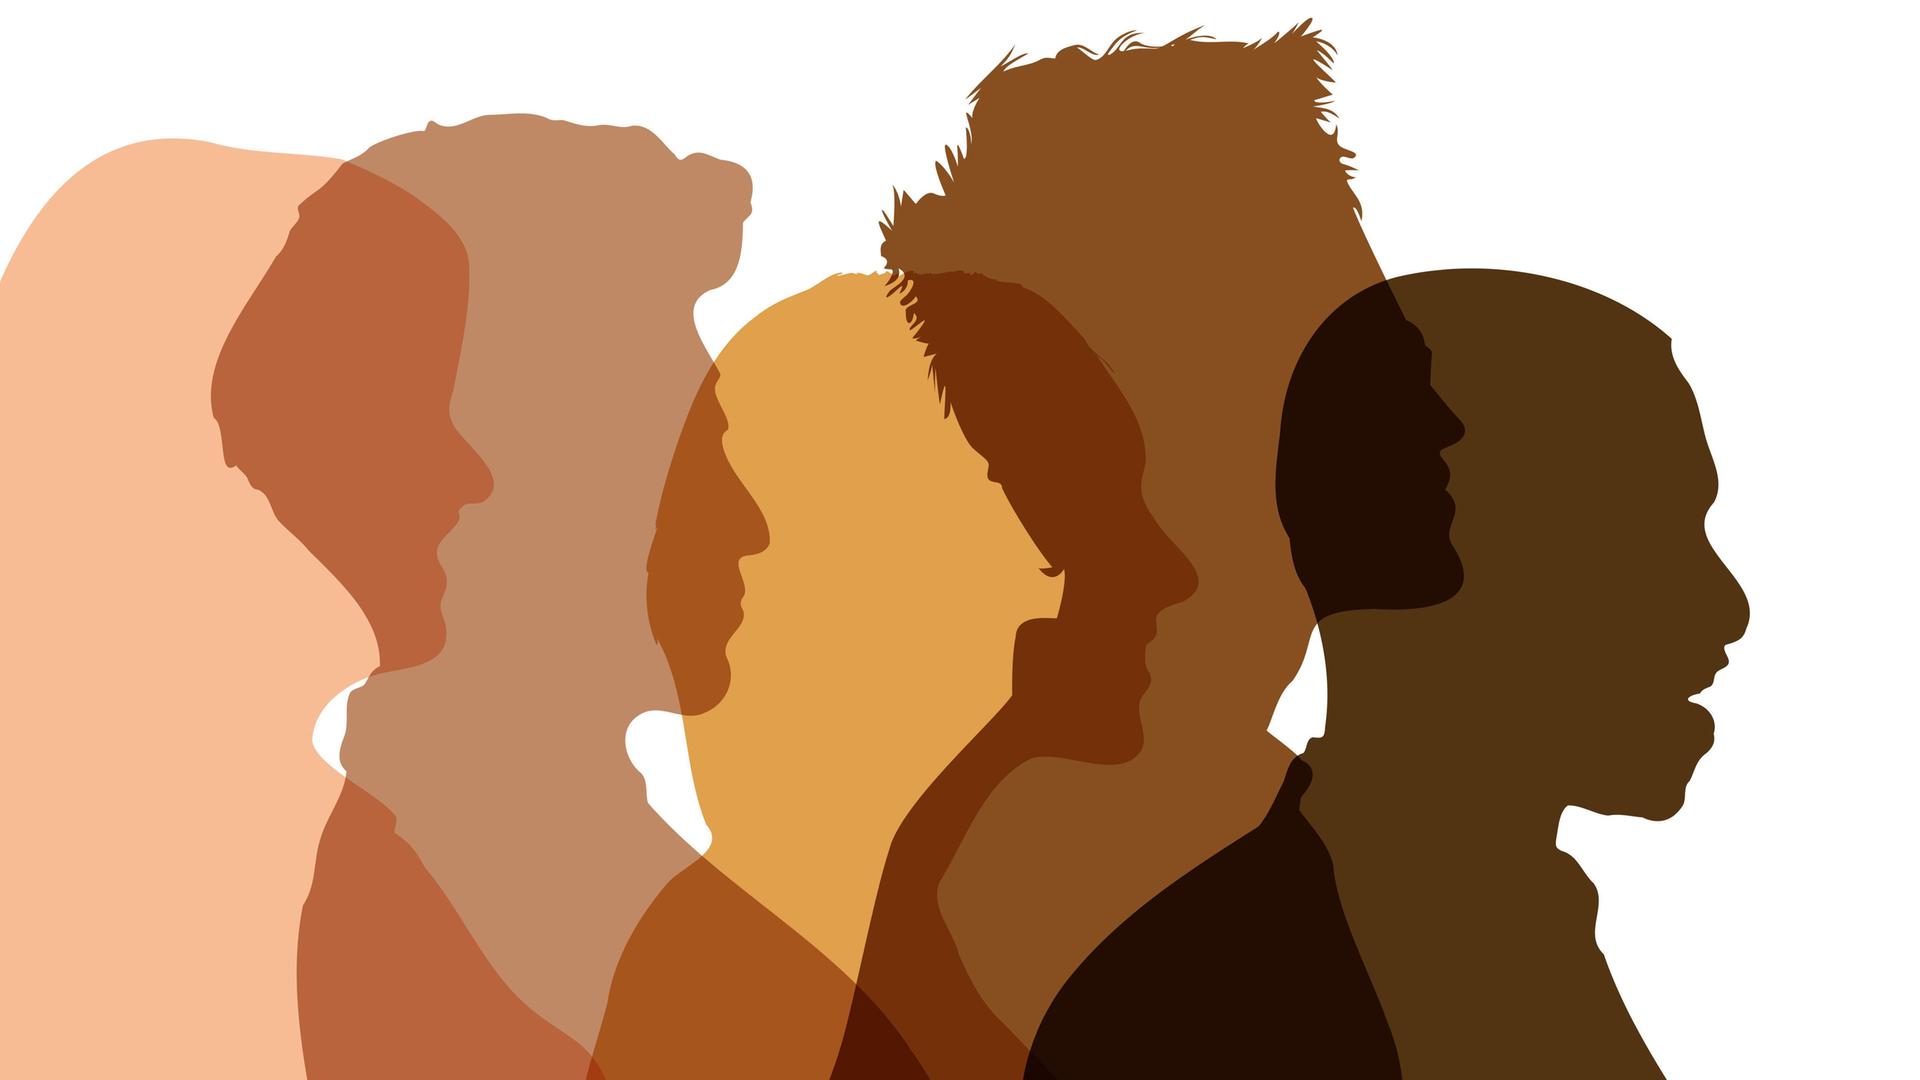 Menschen im Profil in Hautfarben als Zeichen von Vielfalt.